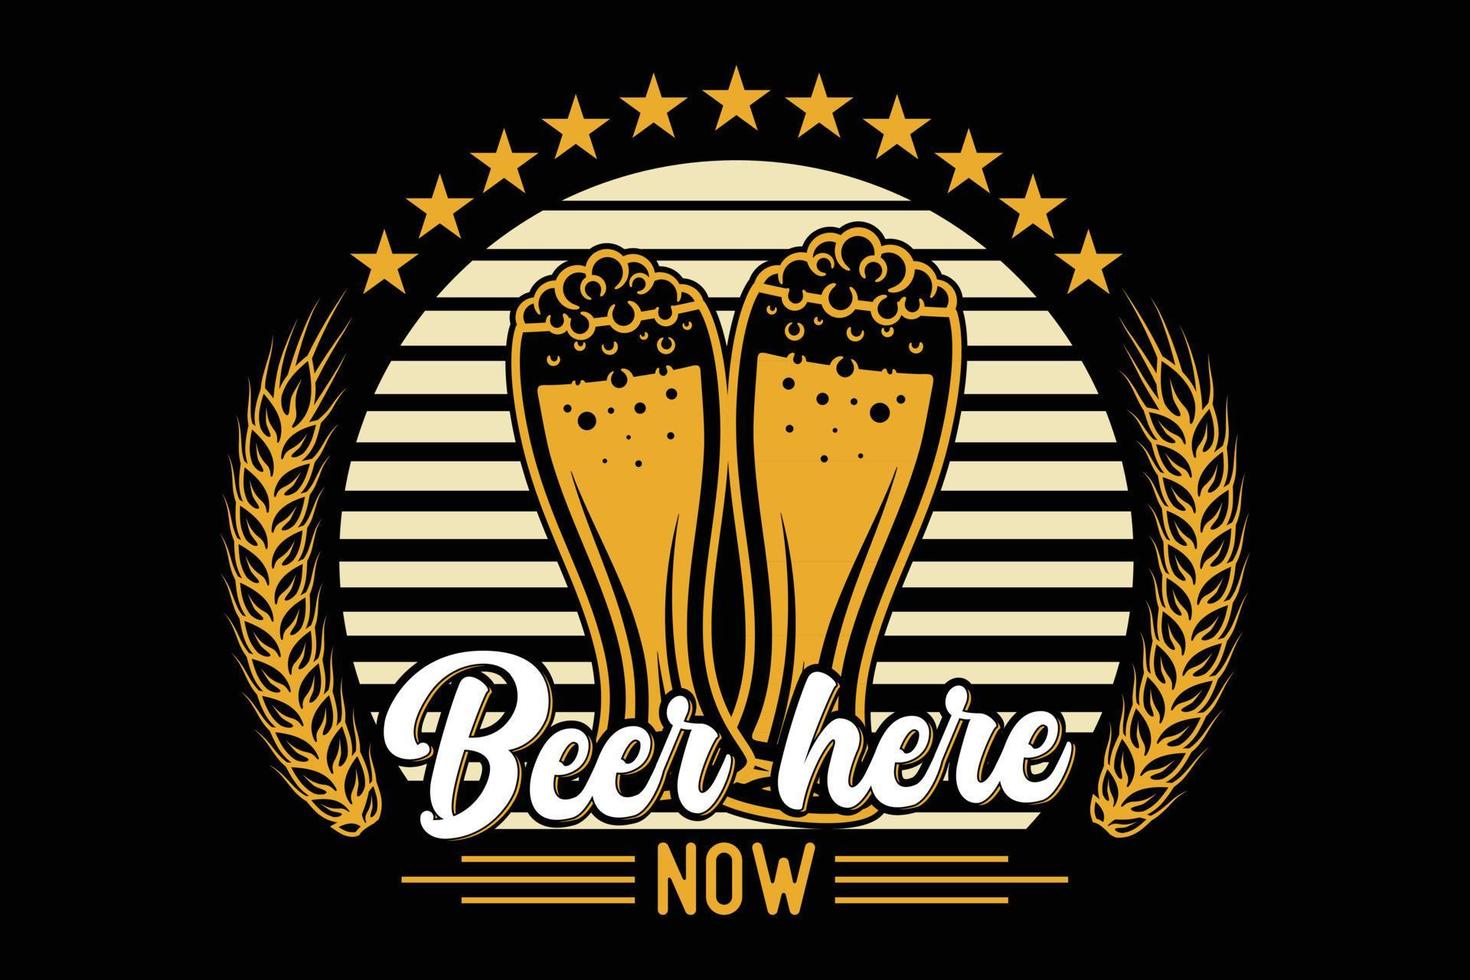 Beer here now typography beer t-shirt design vector